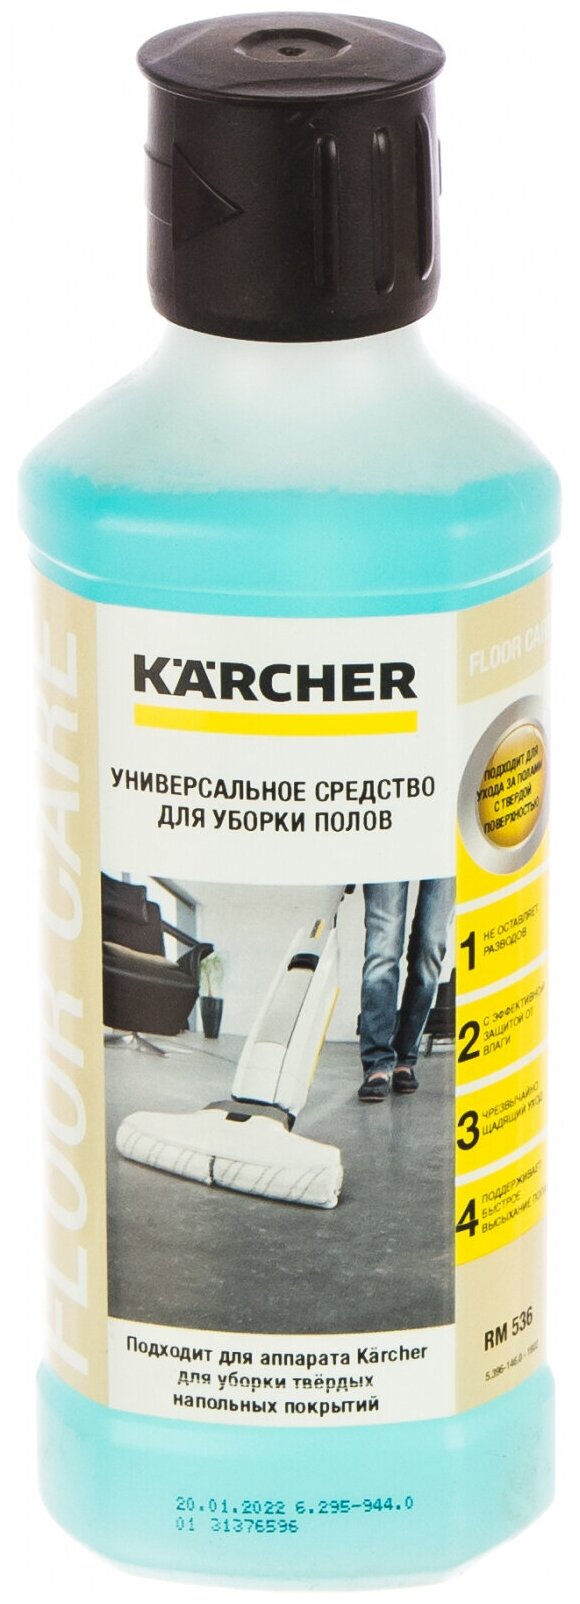 Средства для очистки Karcher - фото №7